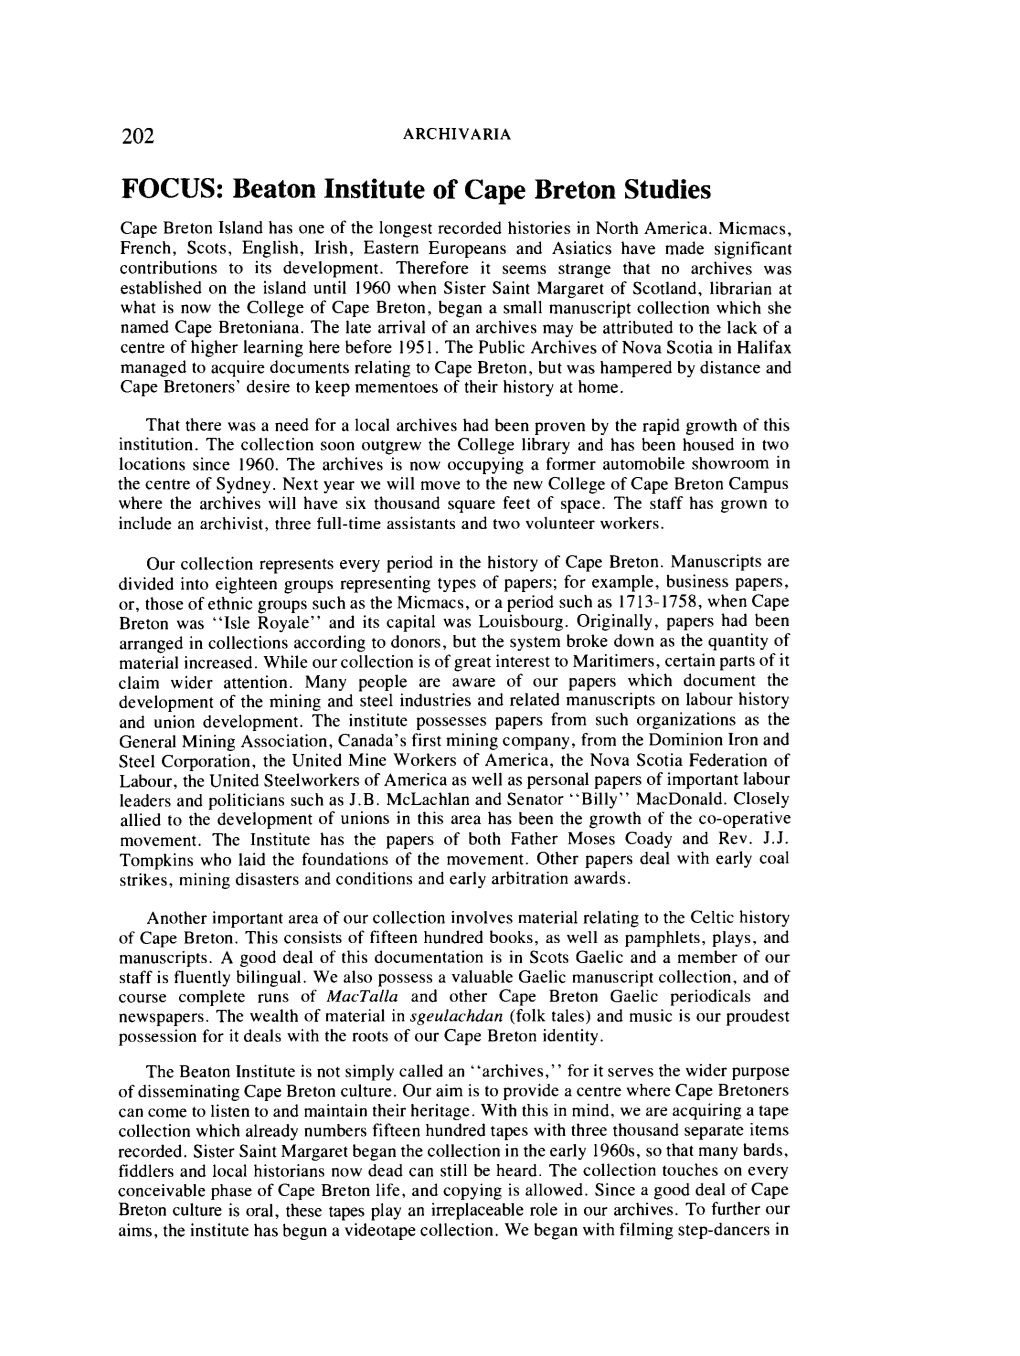 FOCUS: Beaton Institute of Cape Breton Studies Cape Breton Island Has One of the Longest Recorded Histories in North America